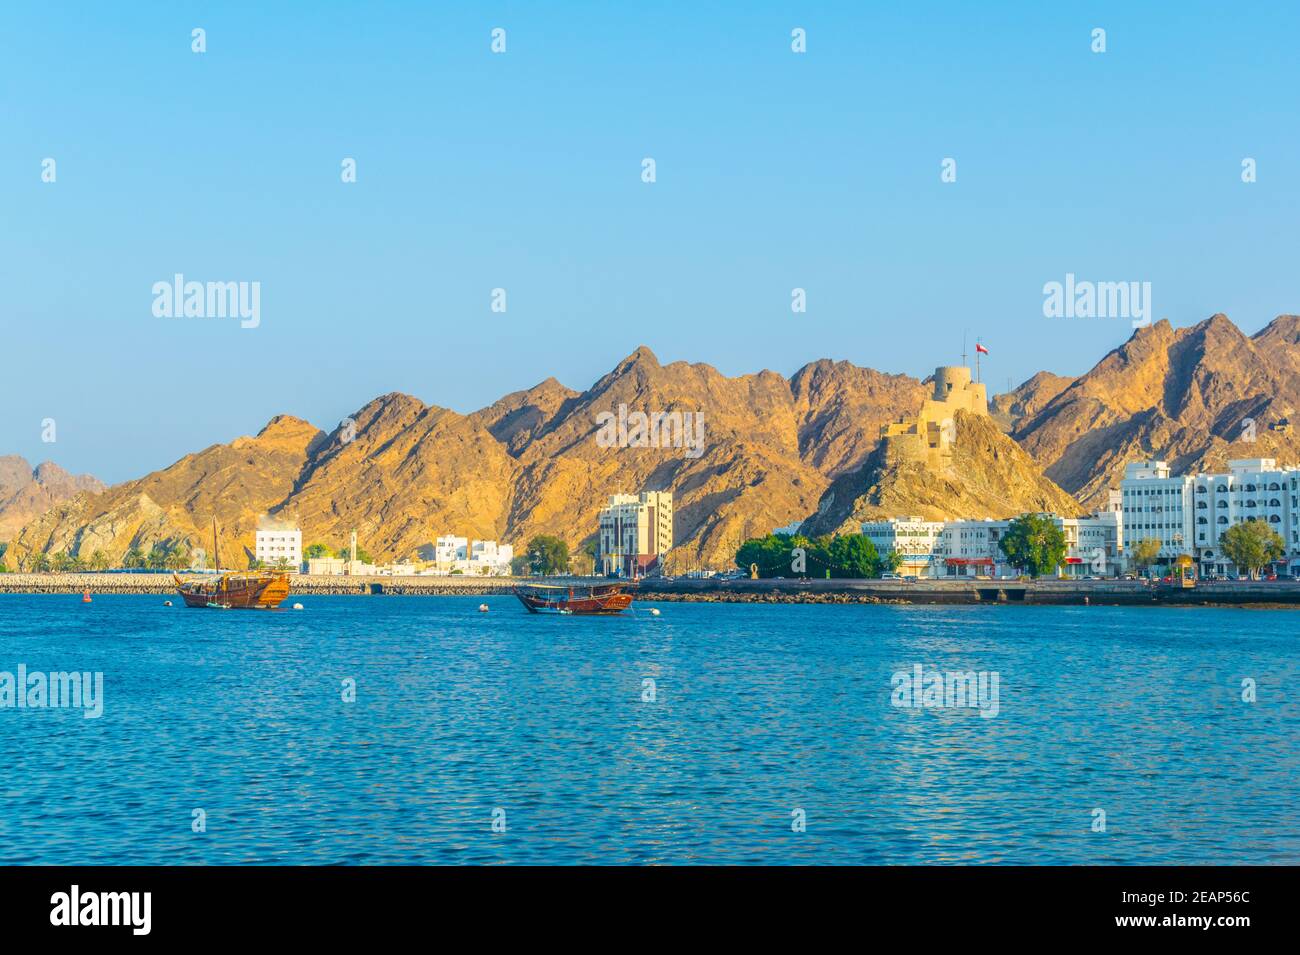 Deux dhuws - des navires arabes traditionnels - se dirigent vers la mer depuis la partie de Muttrah de Muscat dominée par un fort sur une colline, Oman. Banque D'Images